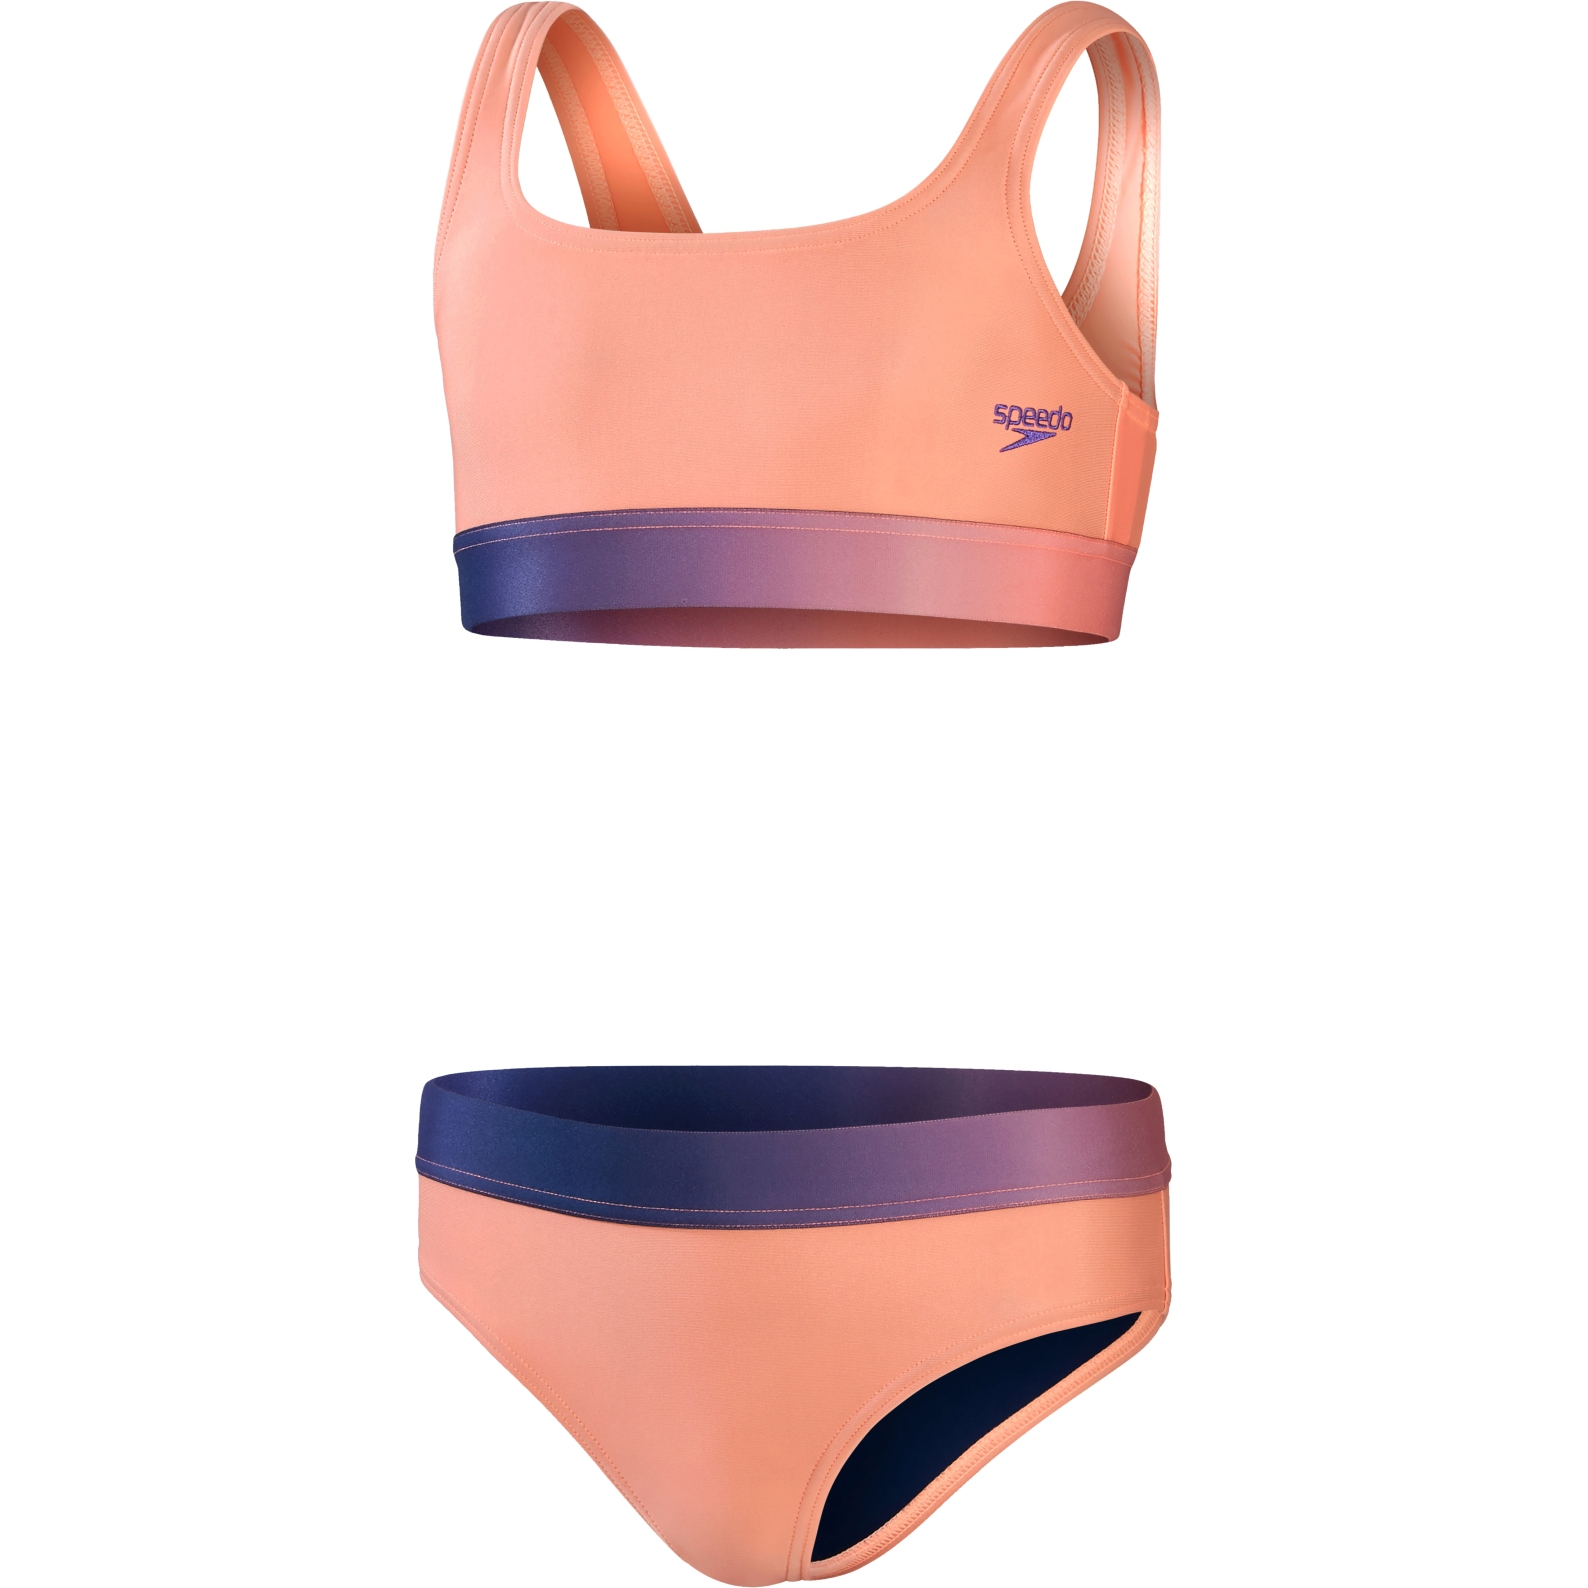 Produktbild von Speedo Contrast Band Bikini Mädchen - soft coral/miami lilac